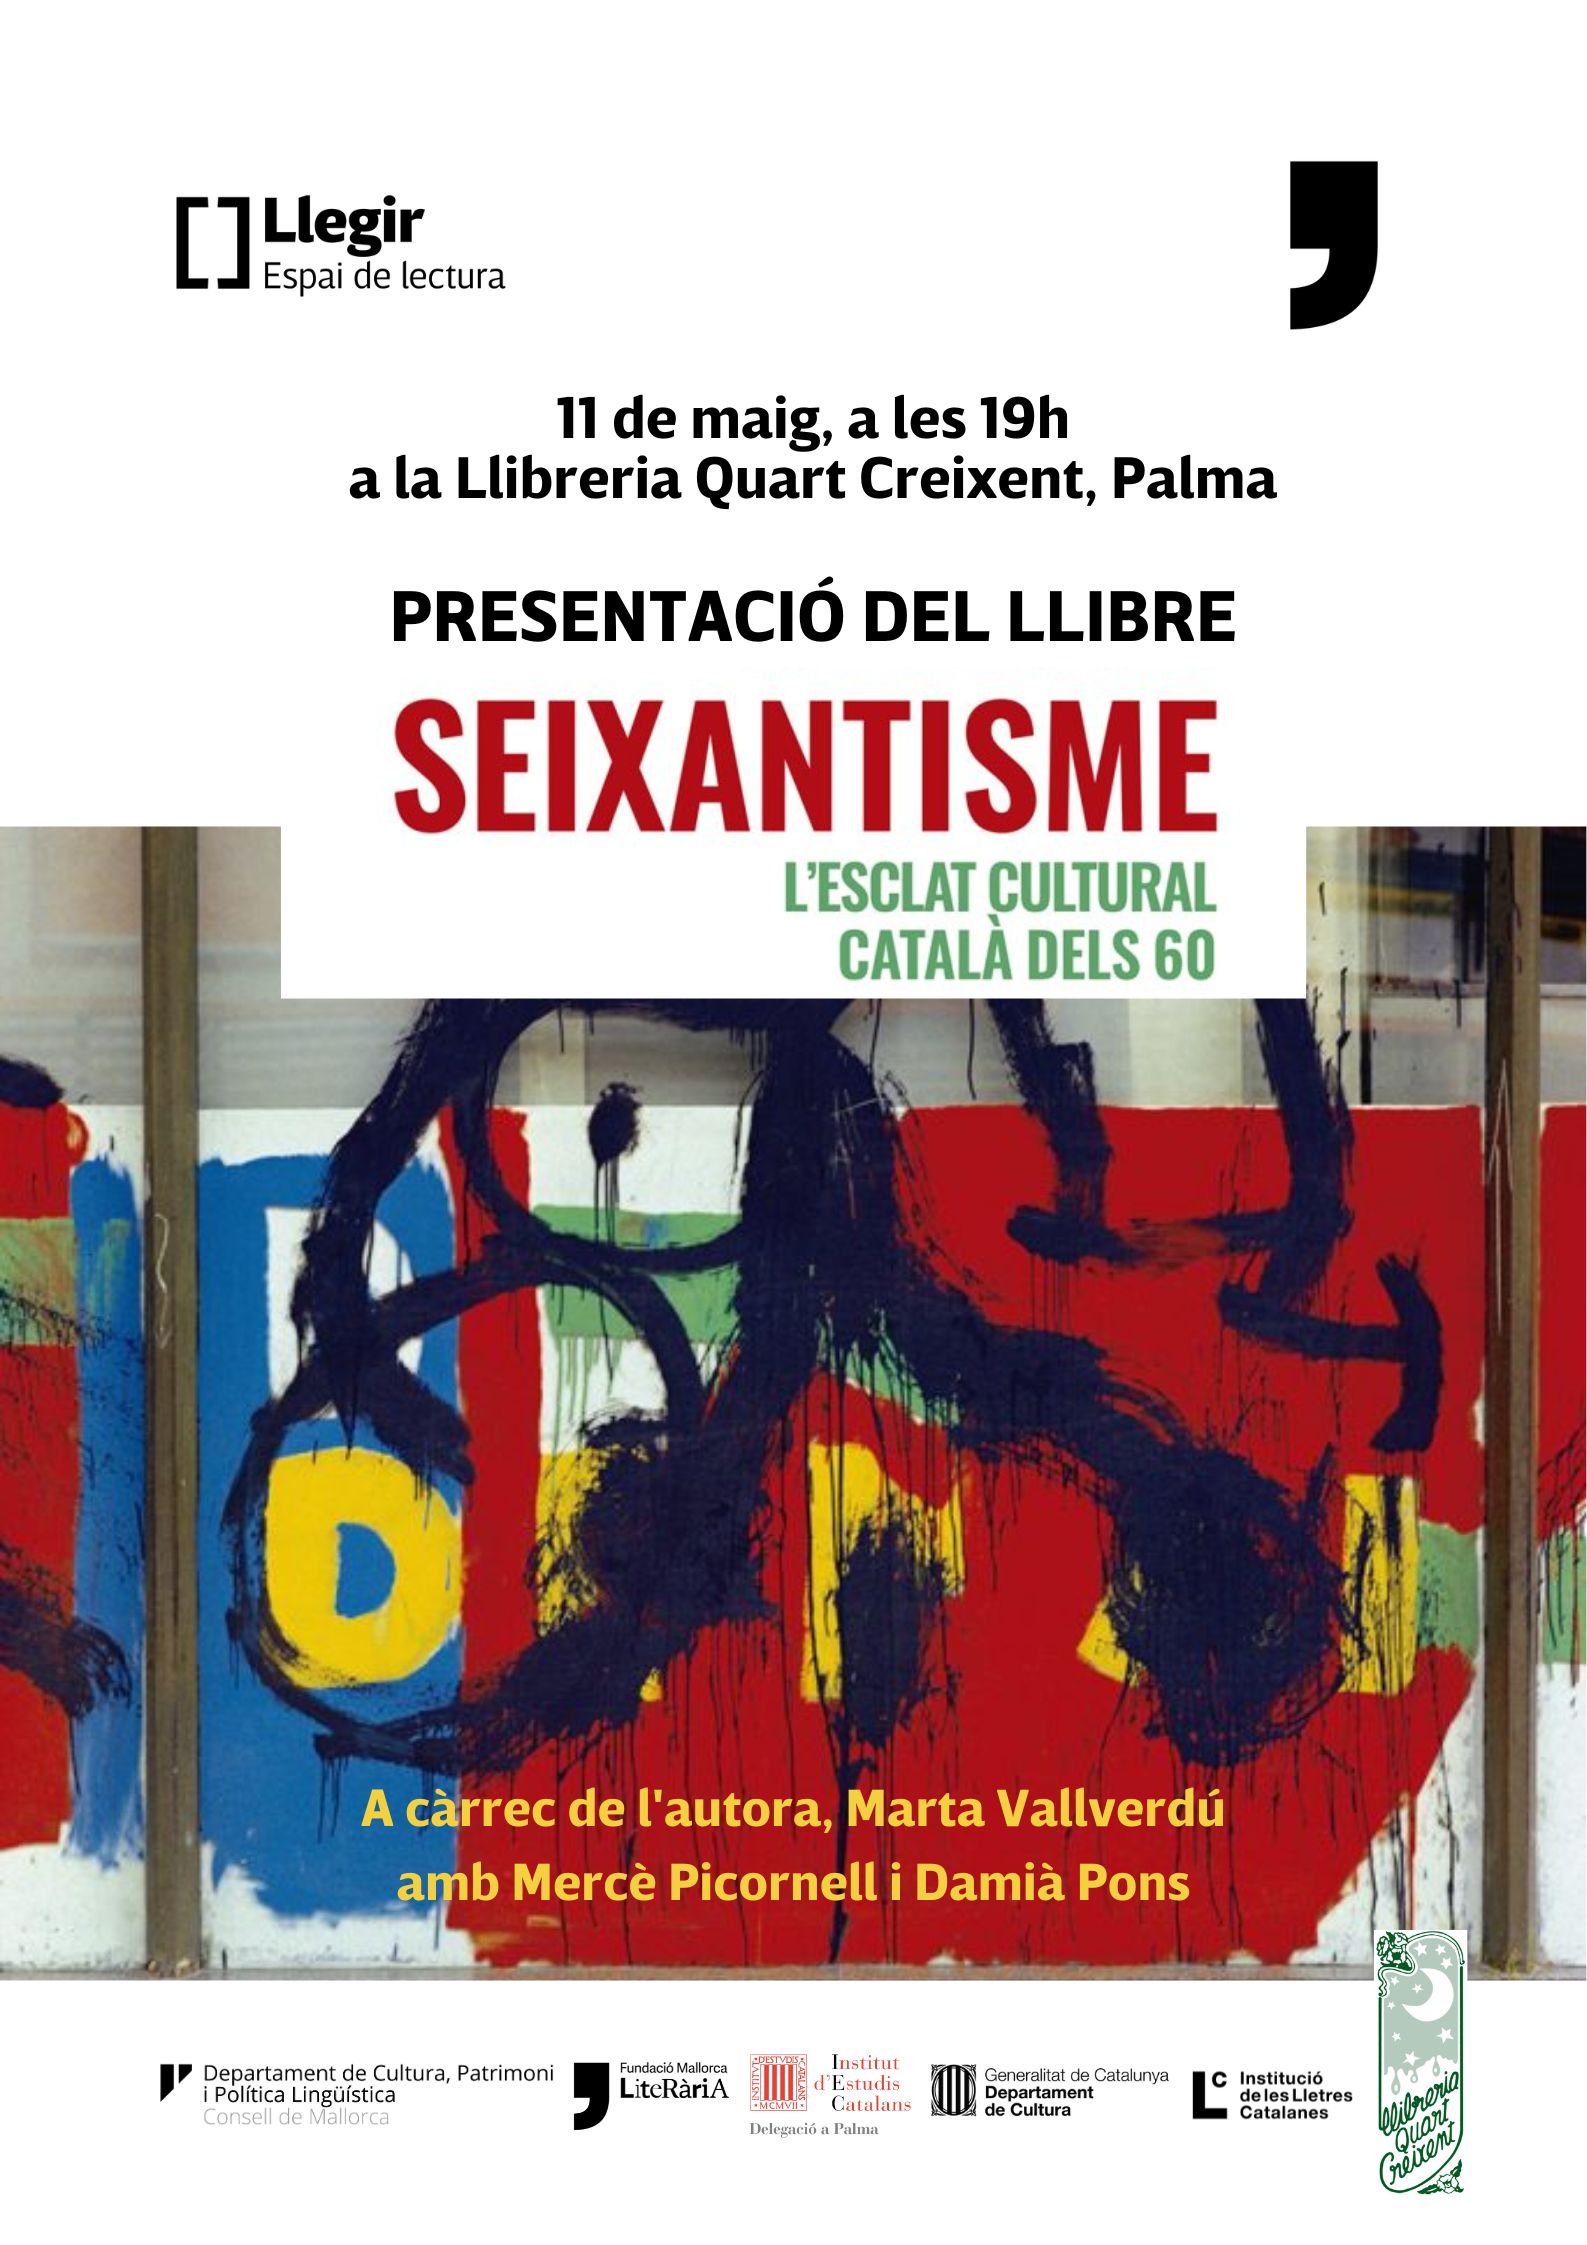 Presentació del llibre “Seixantisme” a Palma